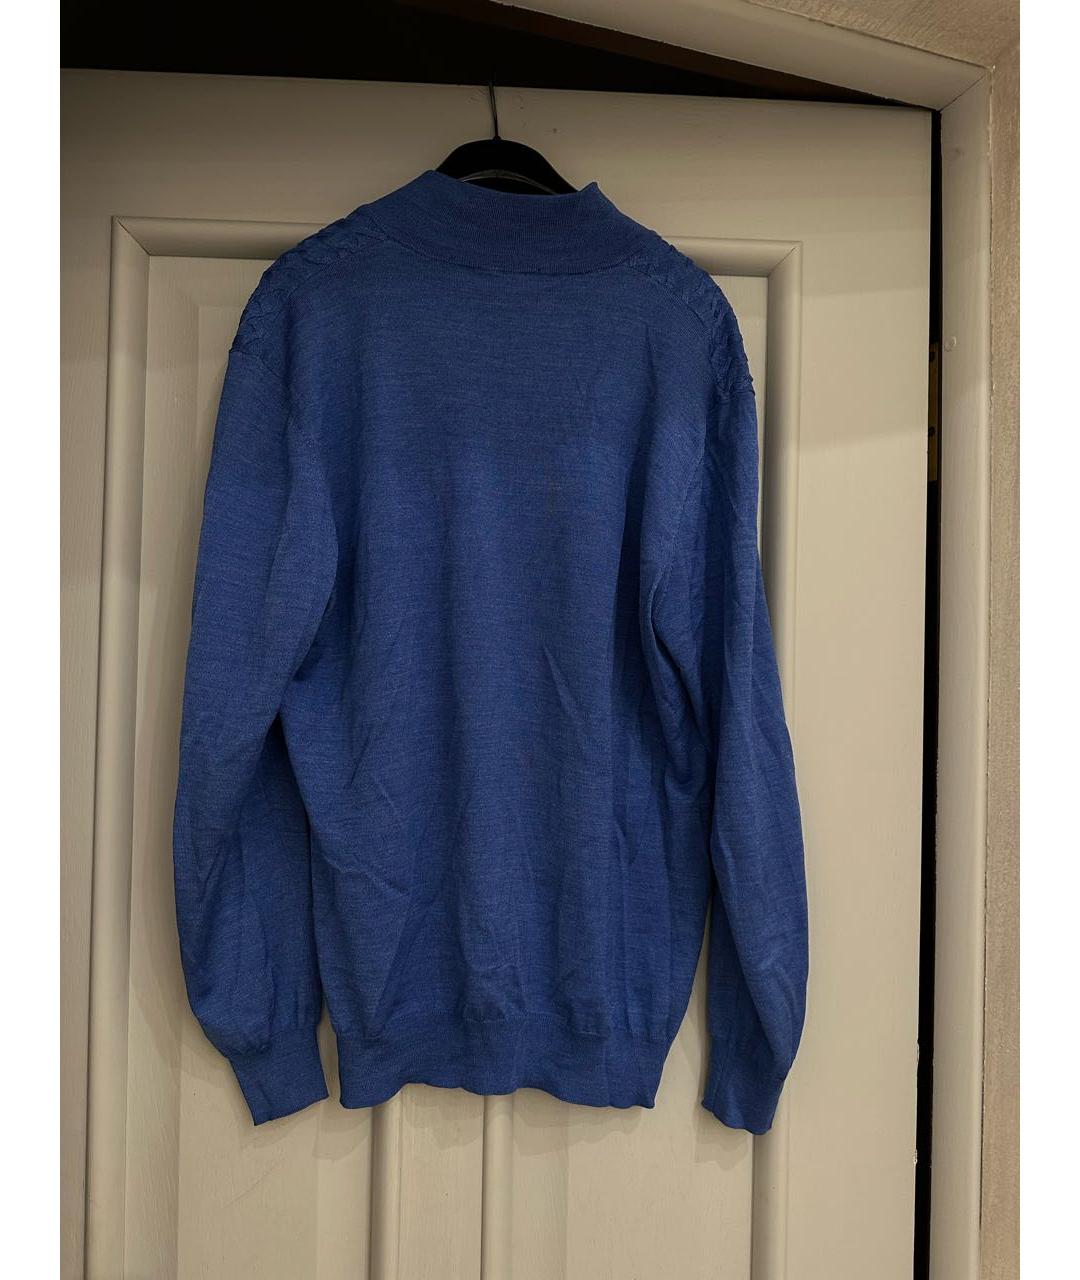 BERTOLO LUXURY MENSWEAR Синий шерстяной джемпер / свитер, фото 2